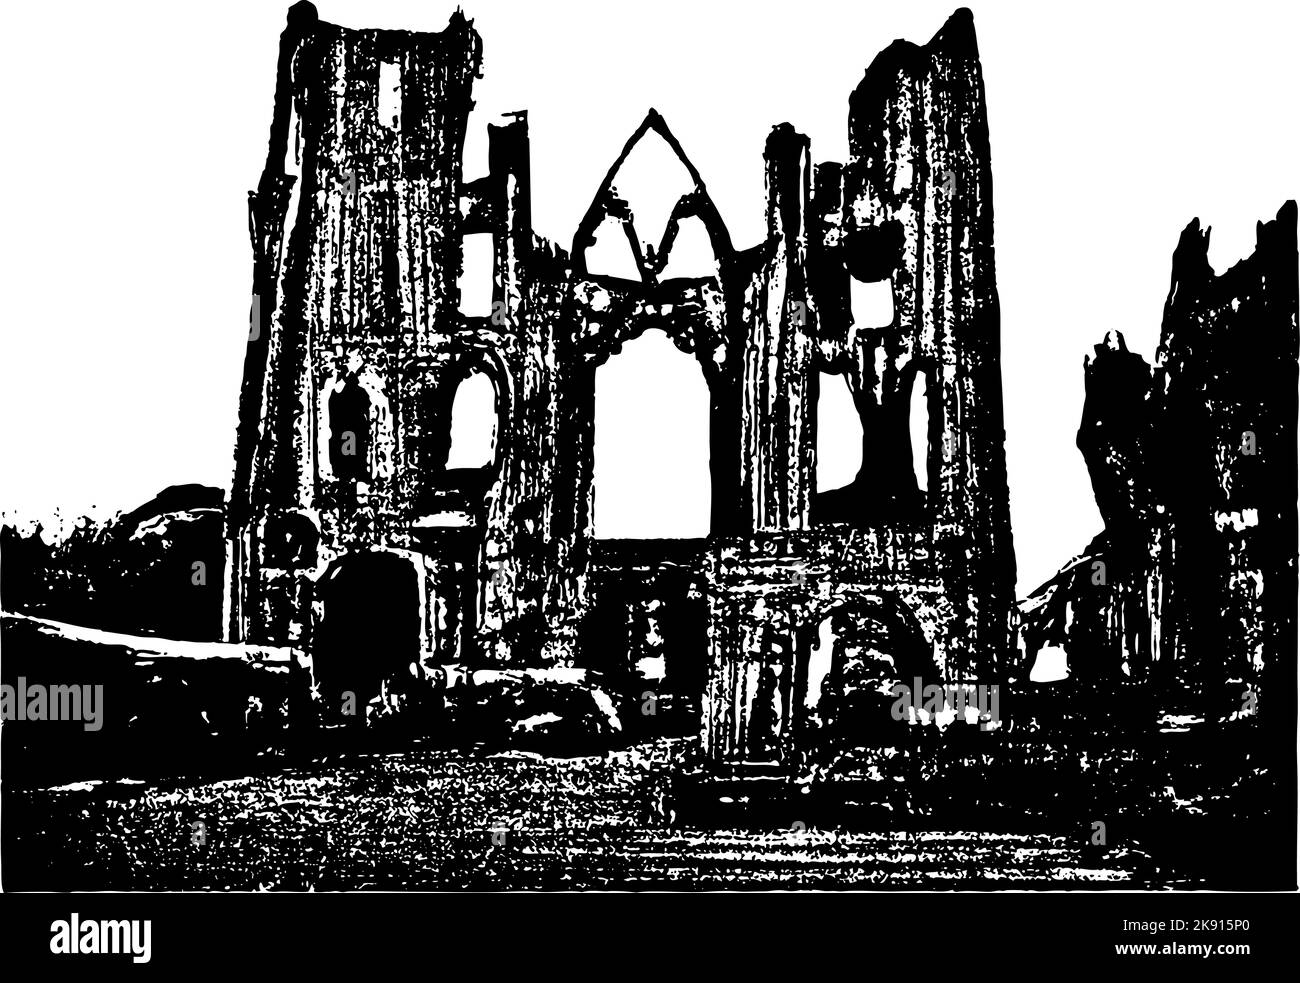 Alte Ruinen von der alten Kirche mit Türmen und Eingang. Kontrastreiche Schwarz-Weiß-Darstellung. Stock Vektor